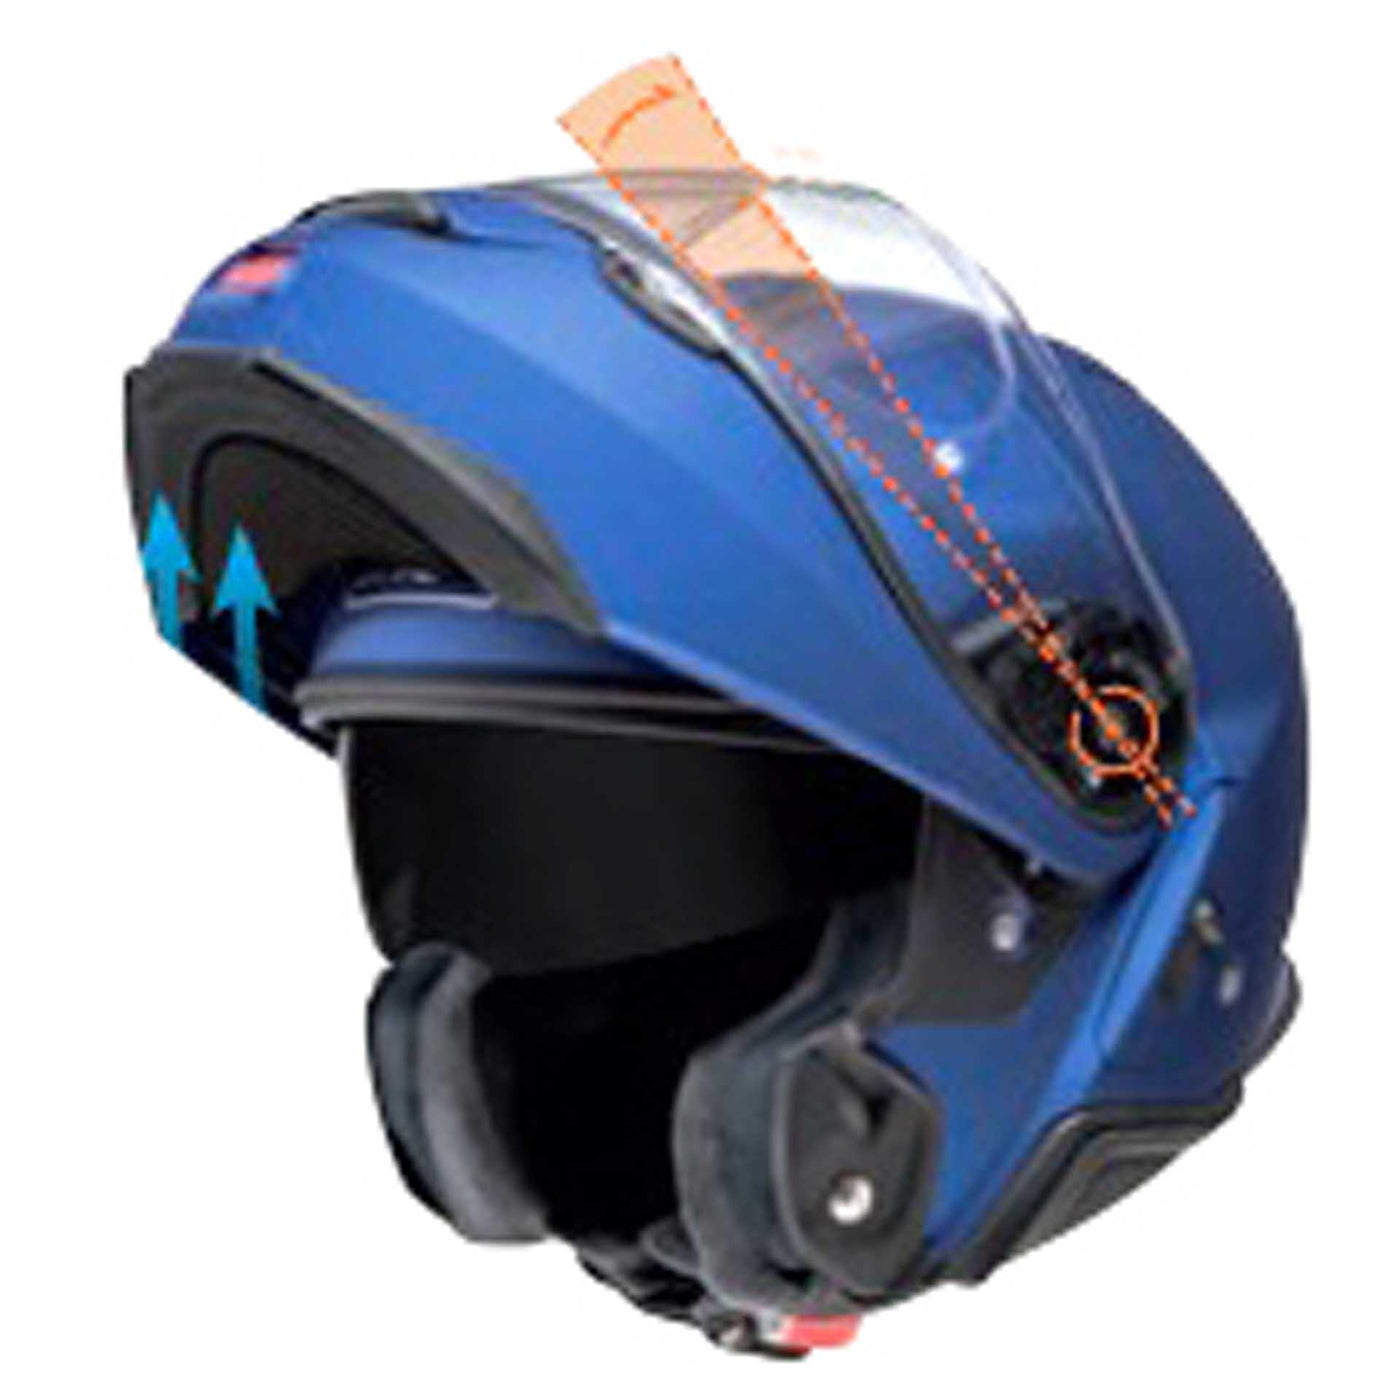 Shoei Neotec II Motorcycle Helmet